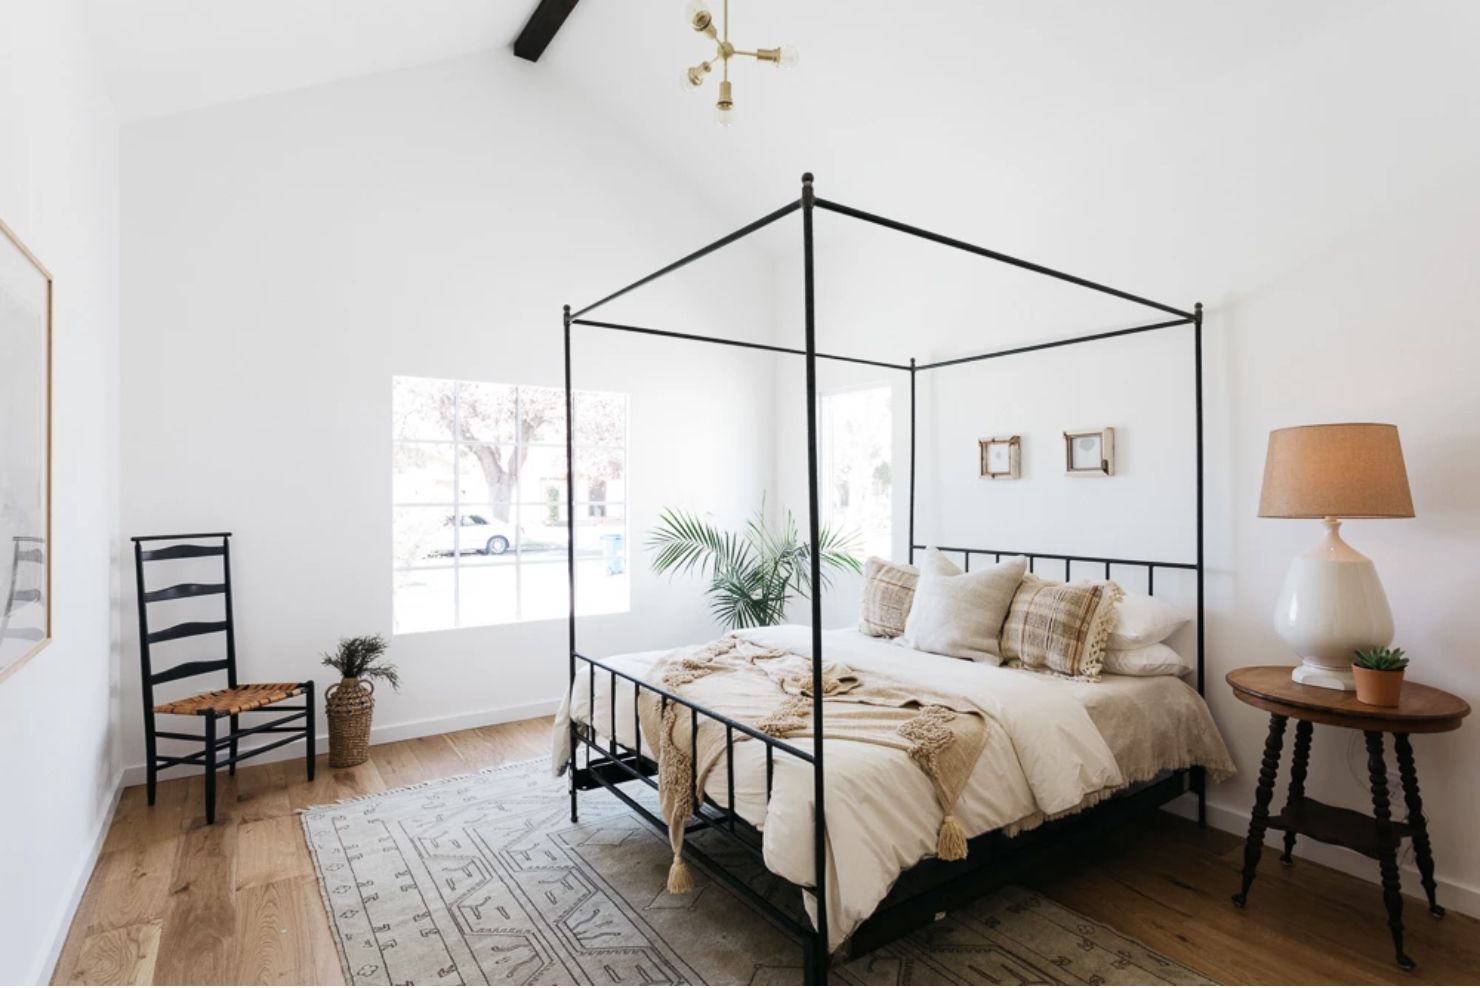 Schlafzimmer mit weißen Wänden und hohen Decken, Holzboden mit einfachem Webteppich, Holznachttisch, Bettgestell mit vier Pfosten, neutrale Farben